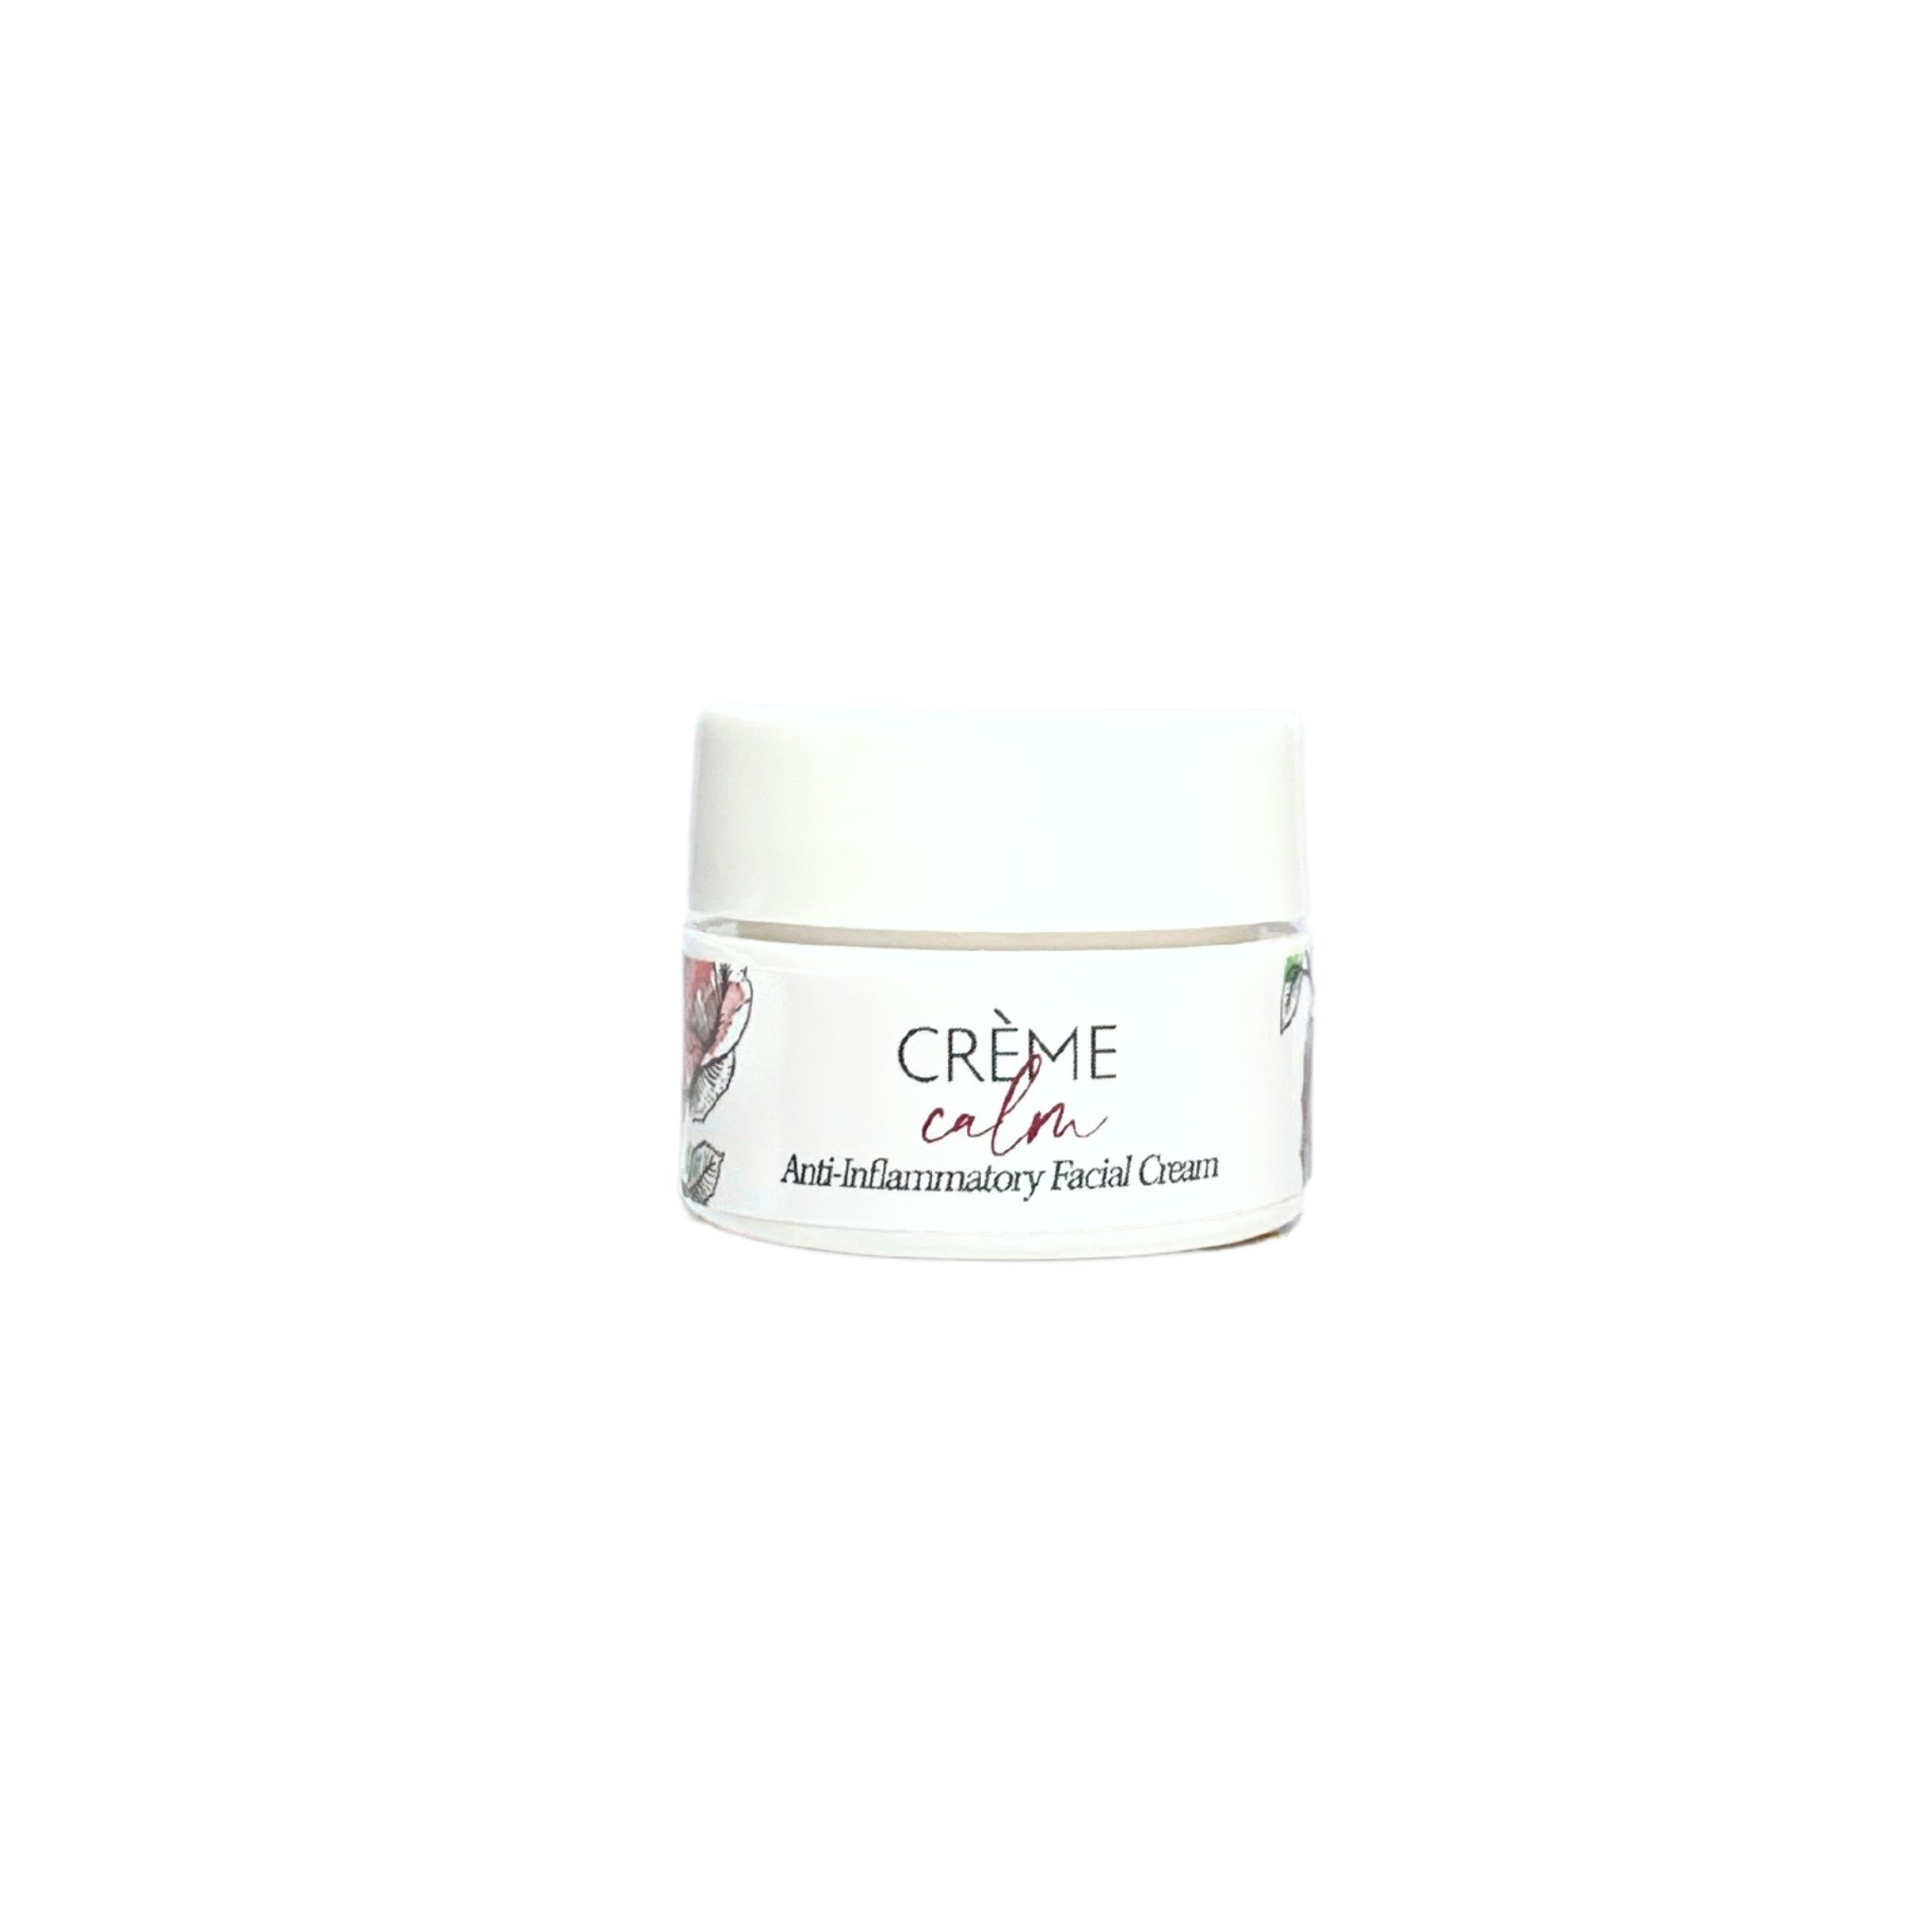 crème calm - anti-inflammatory facial cream